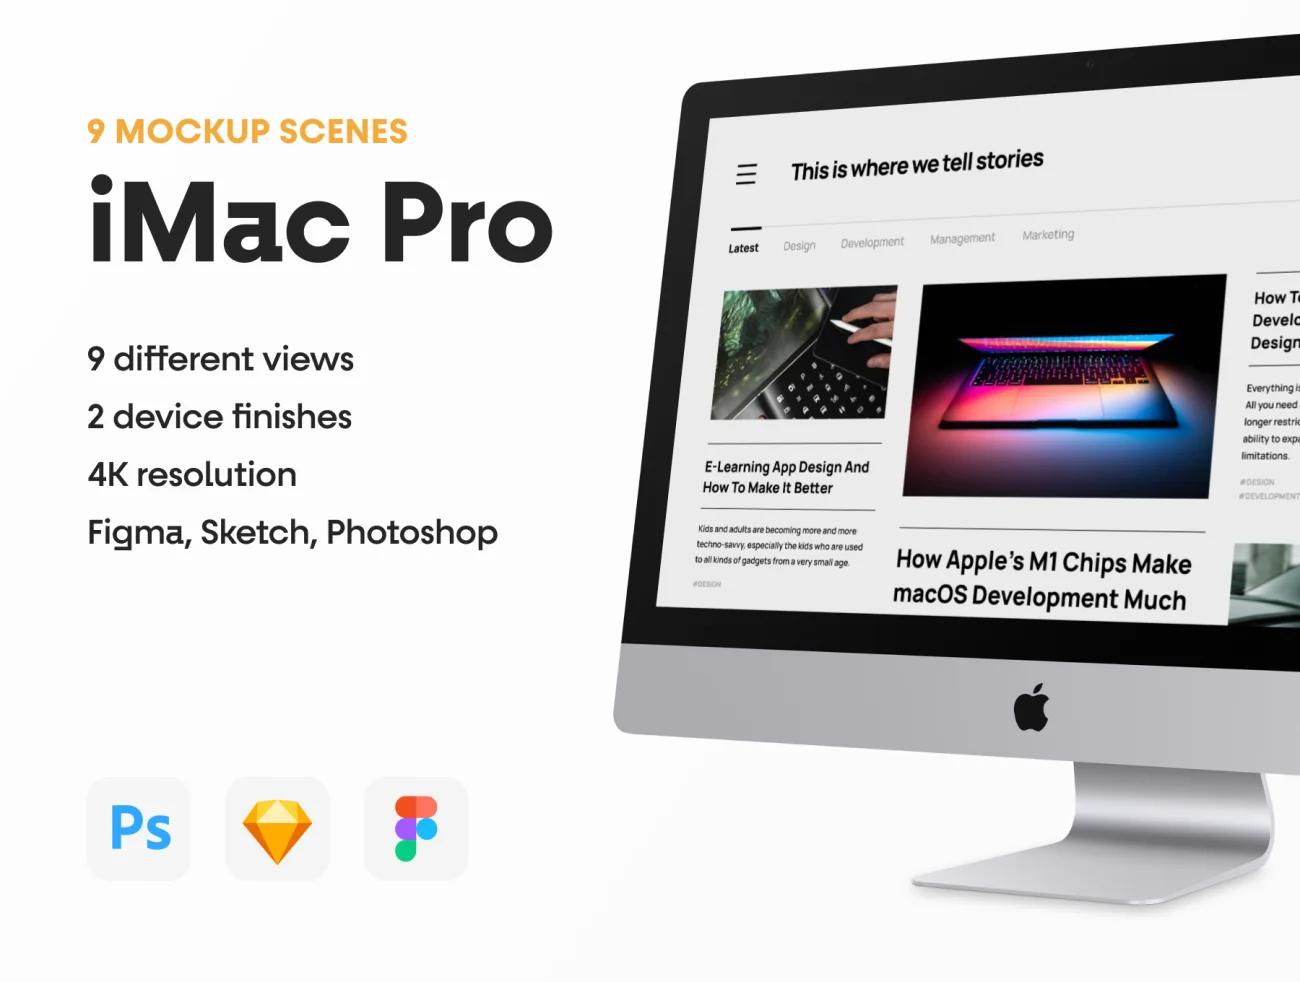 9款最流行的iMac Pro样机套件 Top 9 iMac Pro Mockups-产品展示、优雅样机、创意展示、办公样机、样机、简约样机、苹果设备-到位啦UI